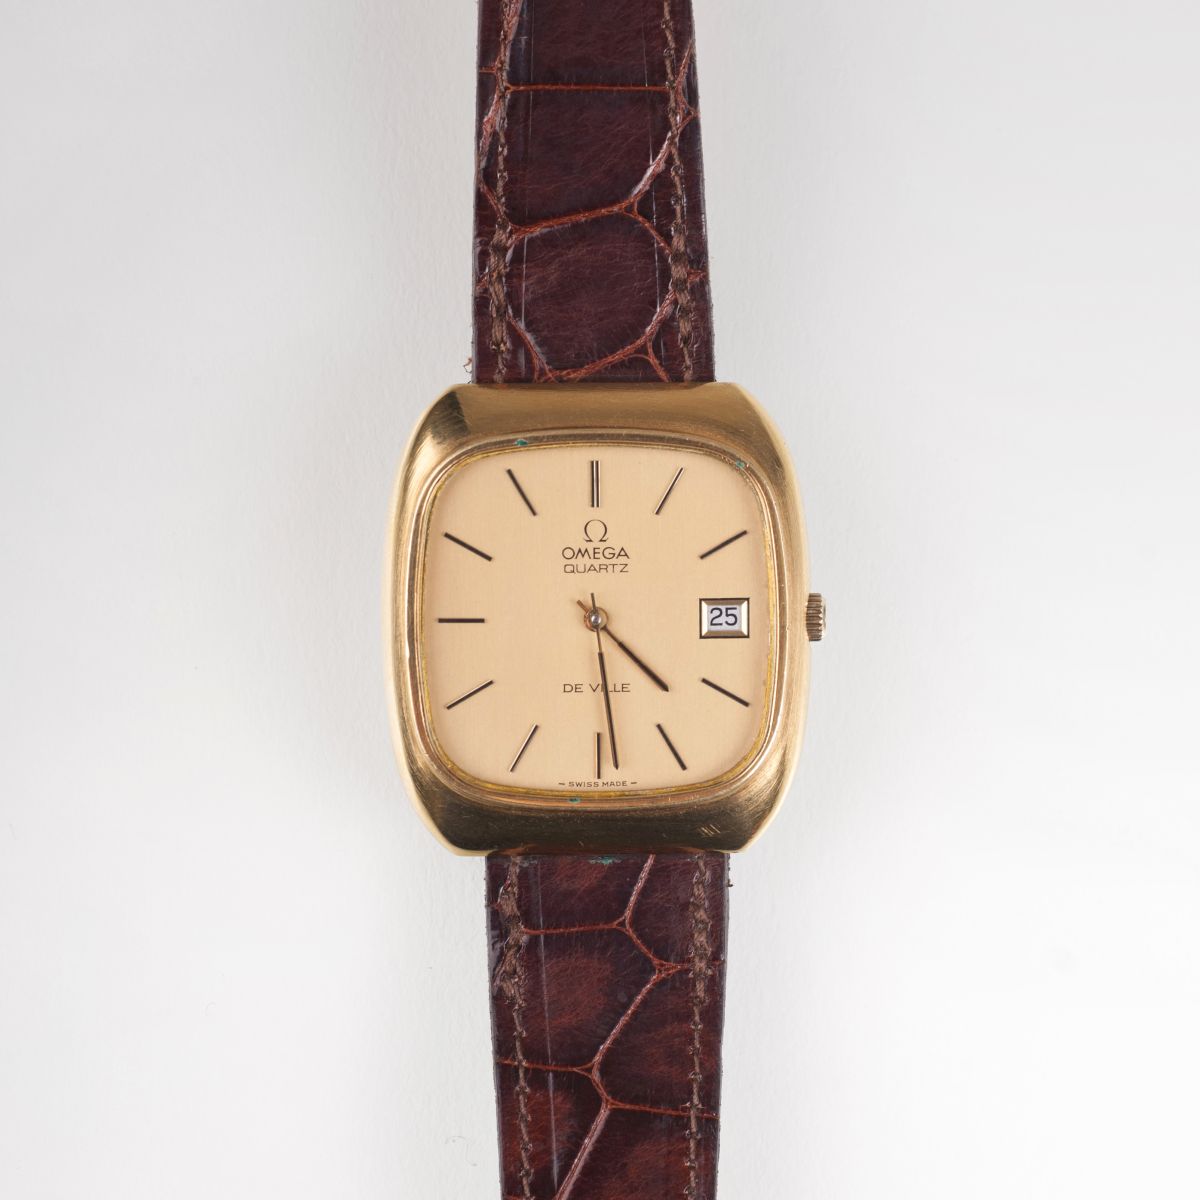 A gentlemen's watch 'De Ville'